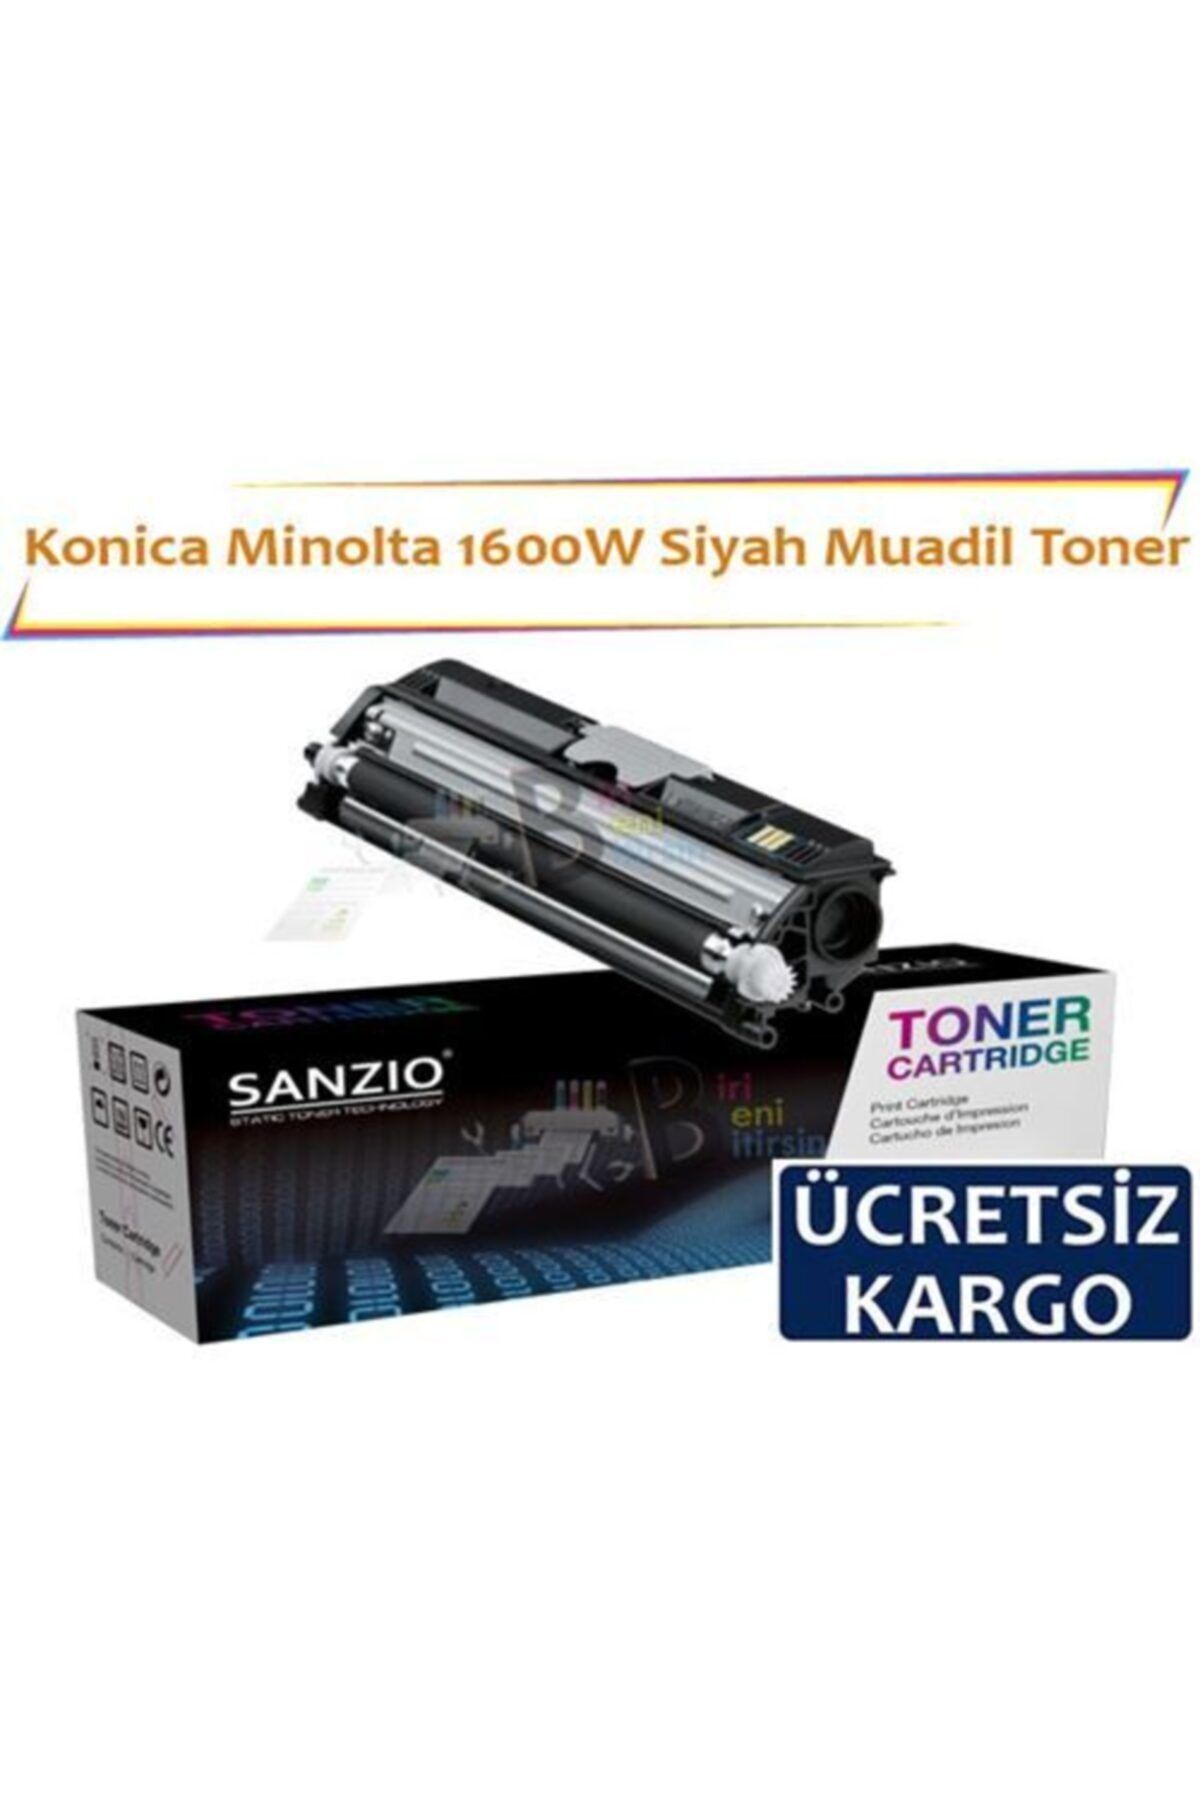 BBB Konica Minolta 1600w Siyah Muadil Toner Fax 1600 1600e 2600 2800 3600 3800